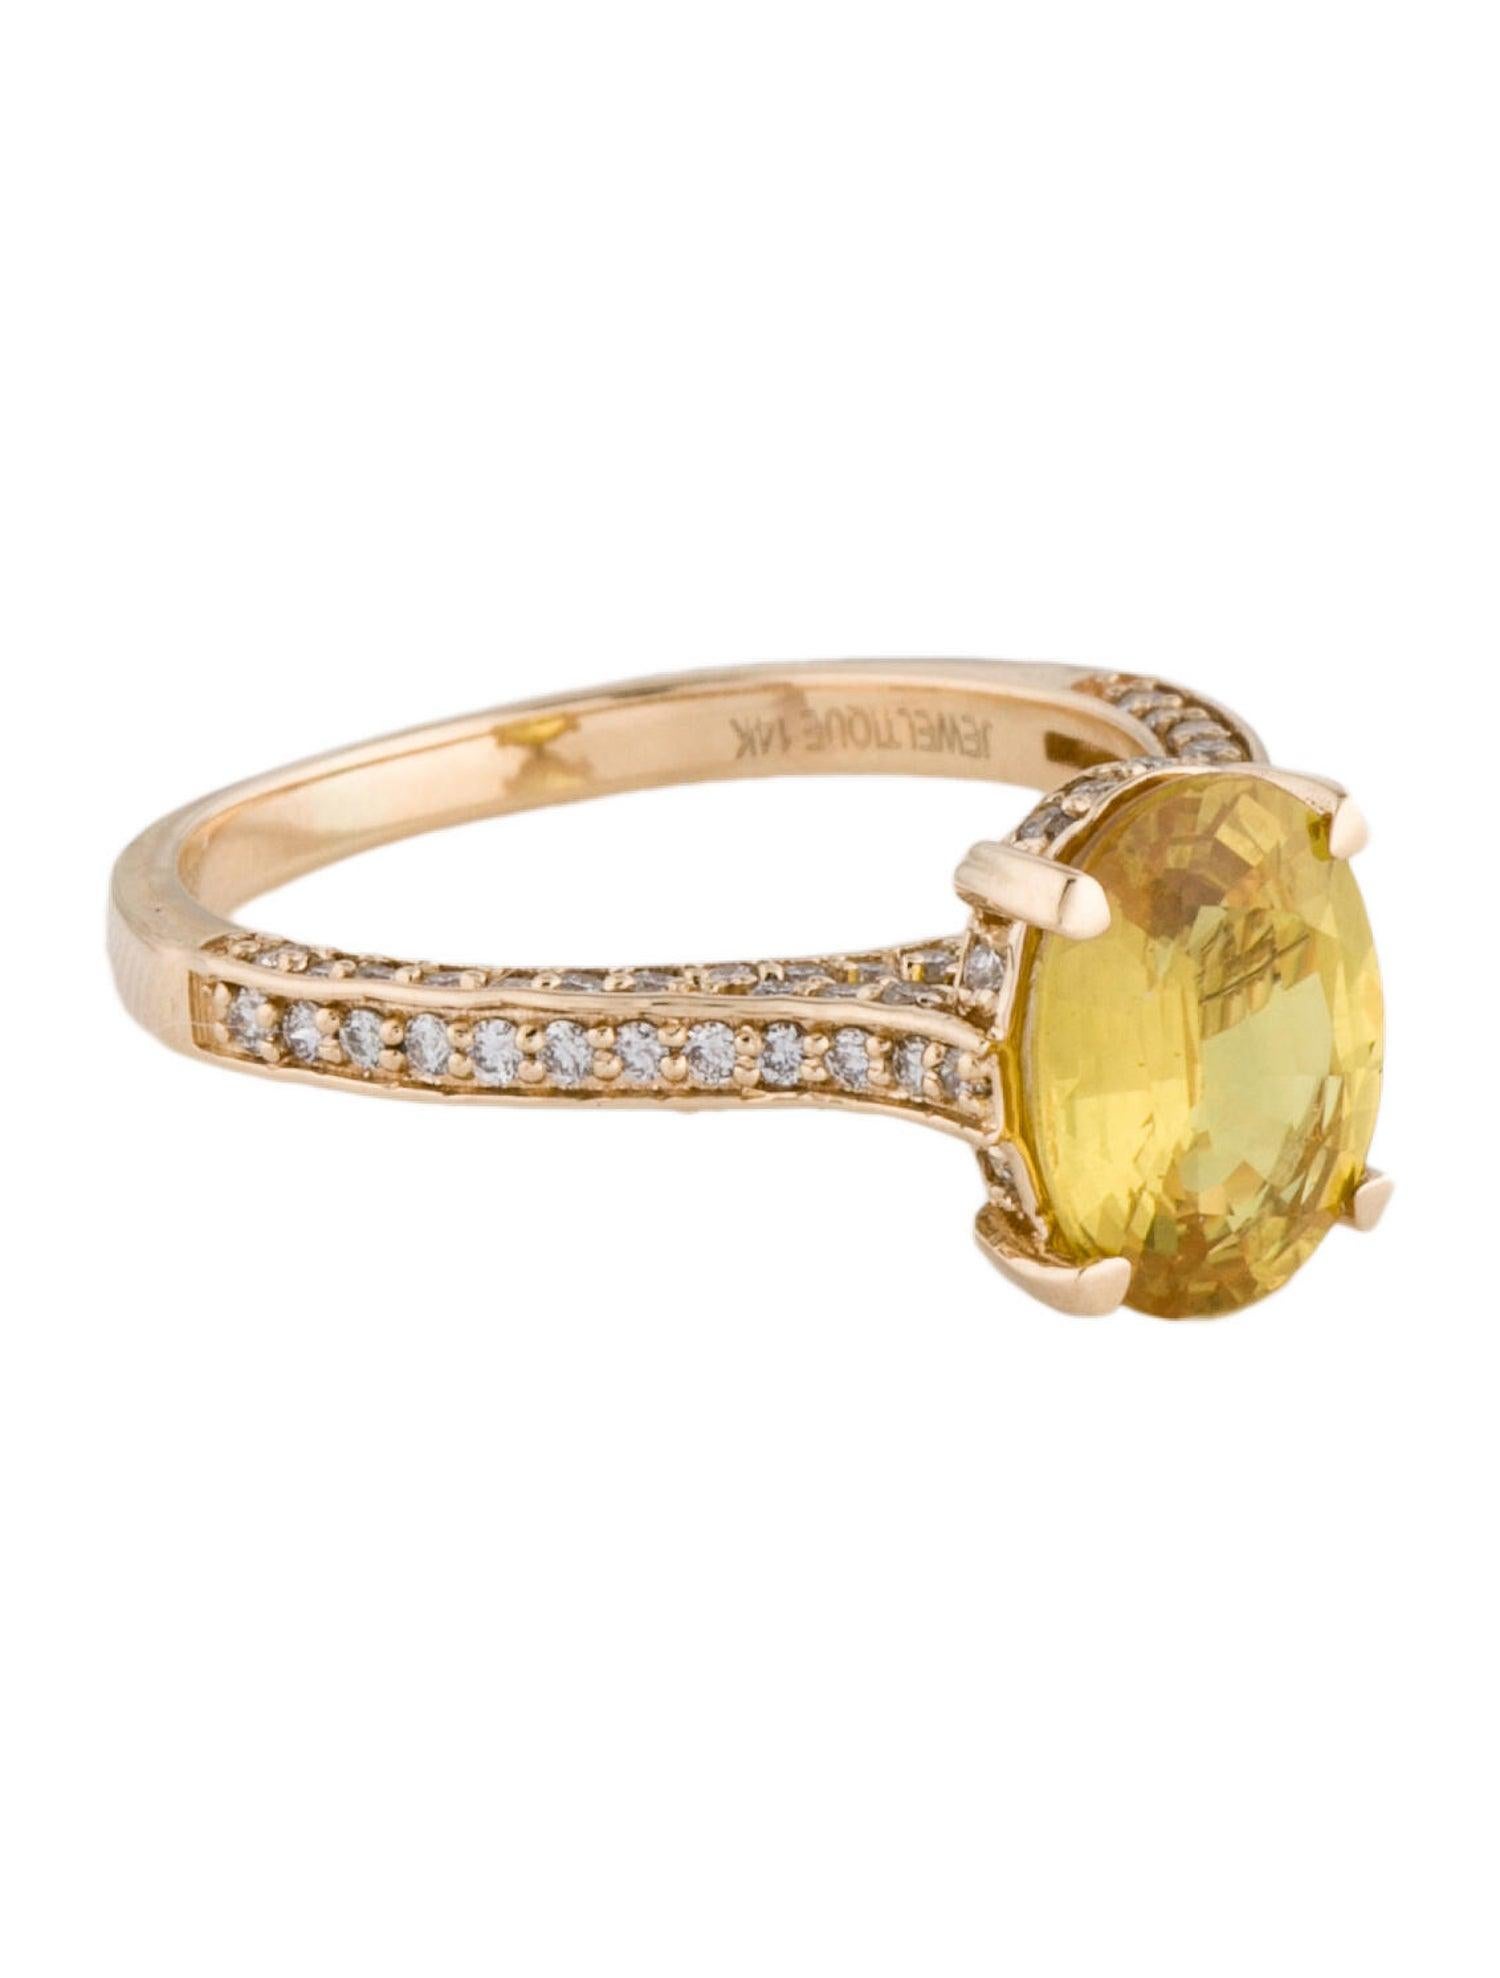 Erhöhen Sie Ihren Stil mit unserem ovalen Ring mit gelbem Saphir und Diamant der Rainbow Symphony Kollektion von Jeweltique. Dieses exquisite Stück spiegelt das lebendige Spektrum eines Regenbogens wider und zelebriert die natürliche Schönheit und